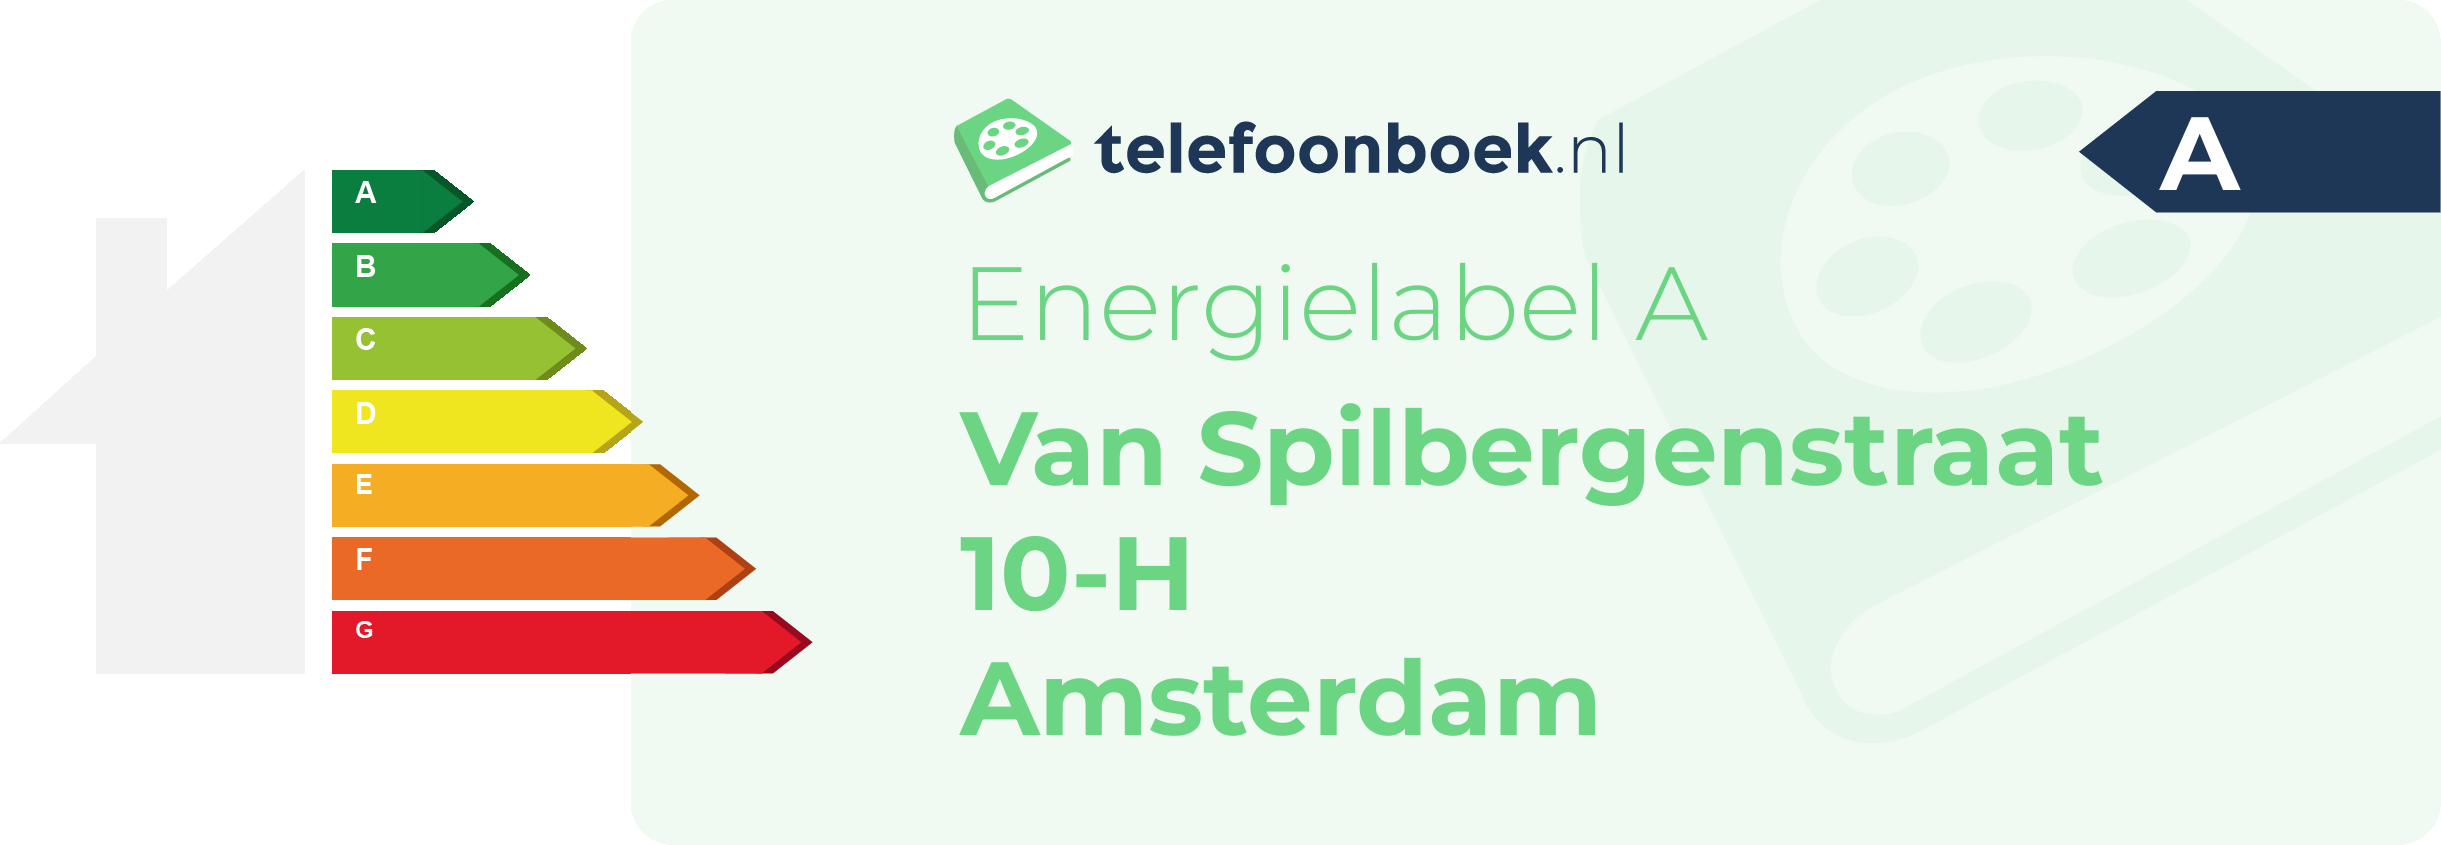 Energielabel Van Spilbergenstraat 10-H Amsterdam